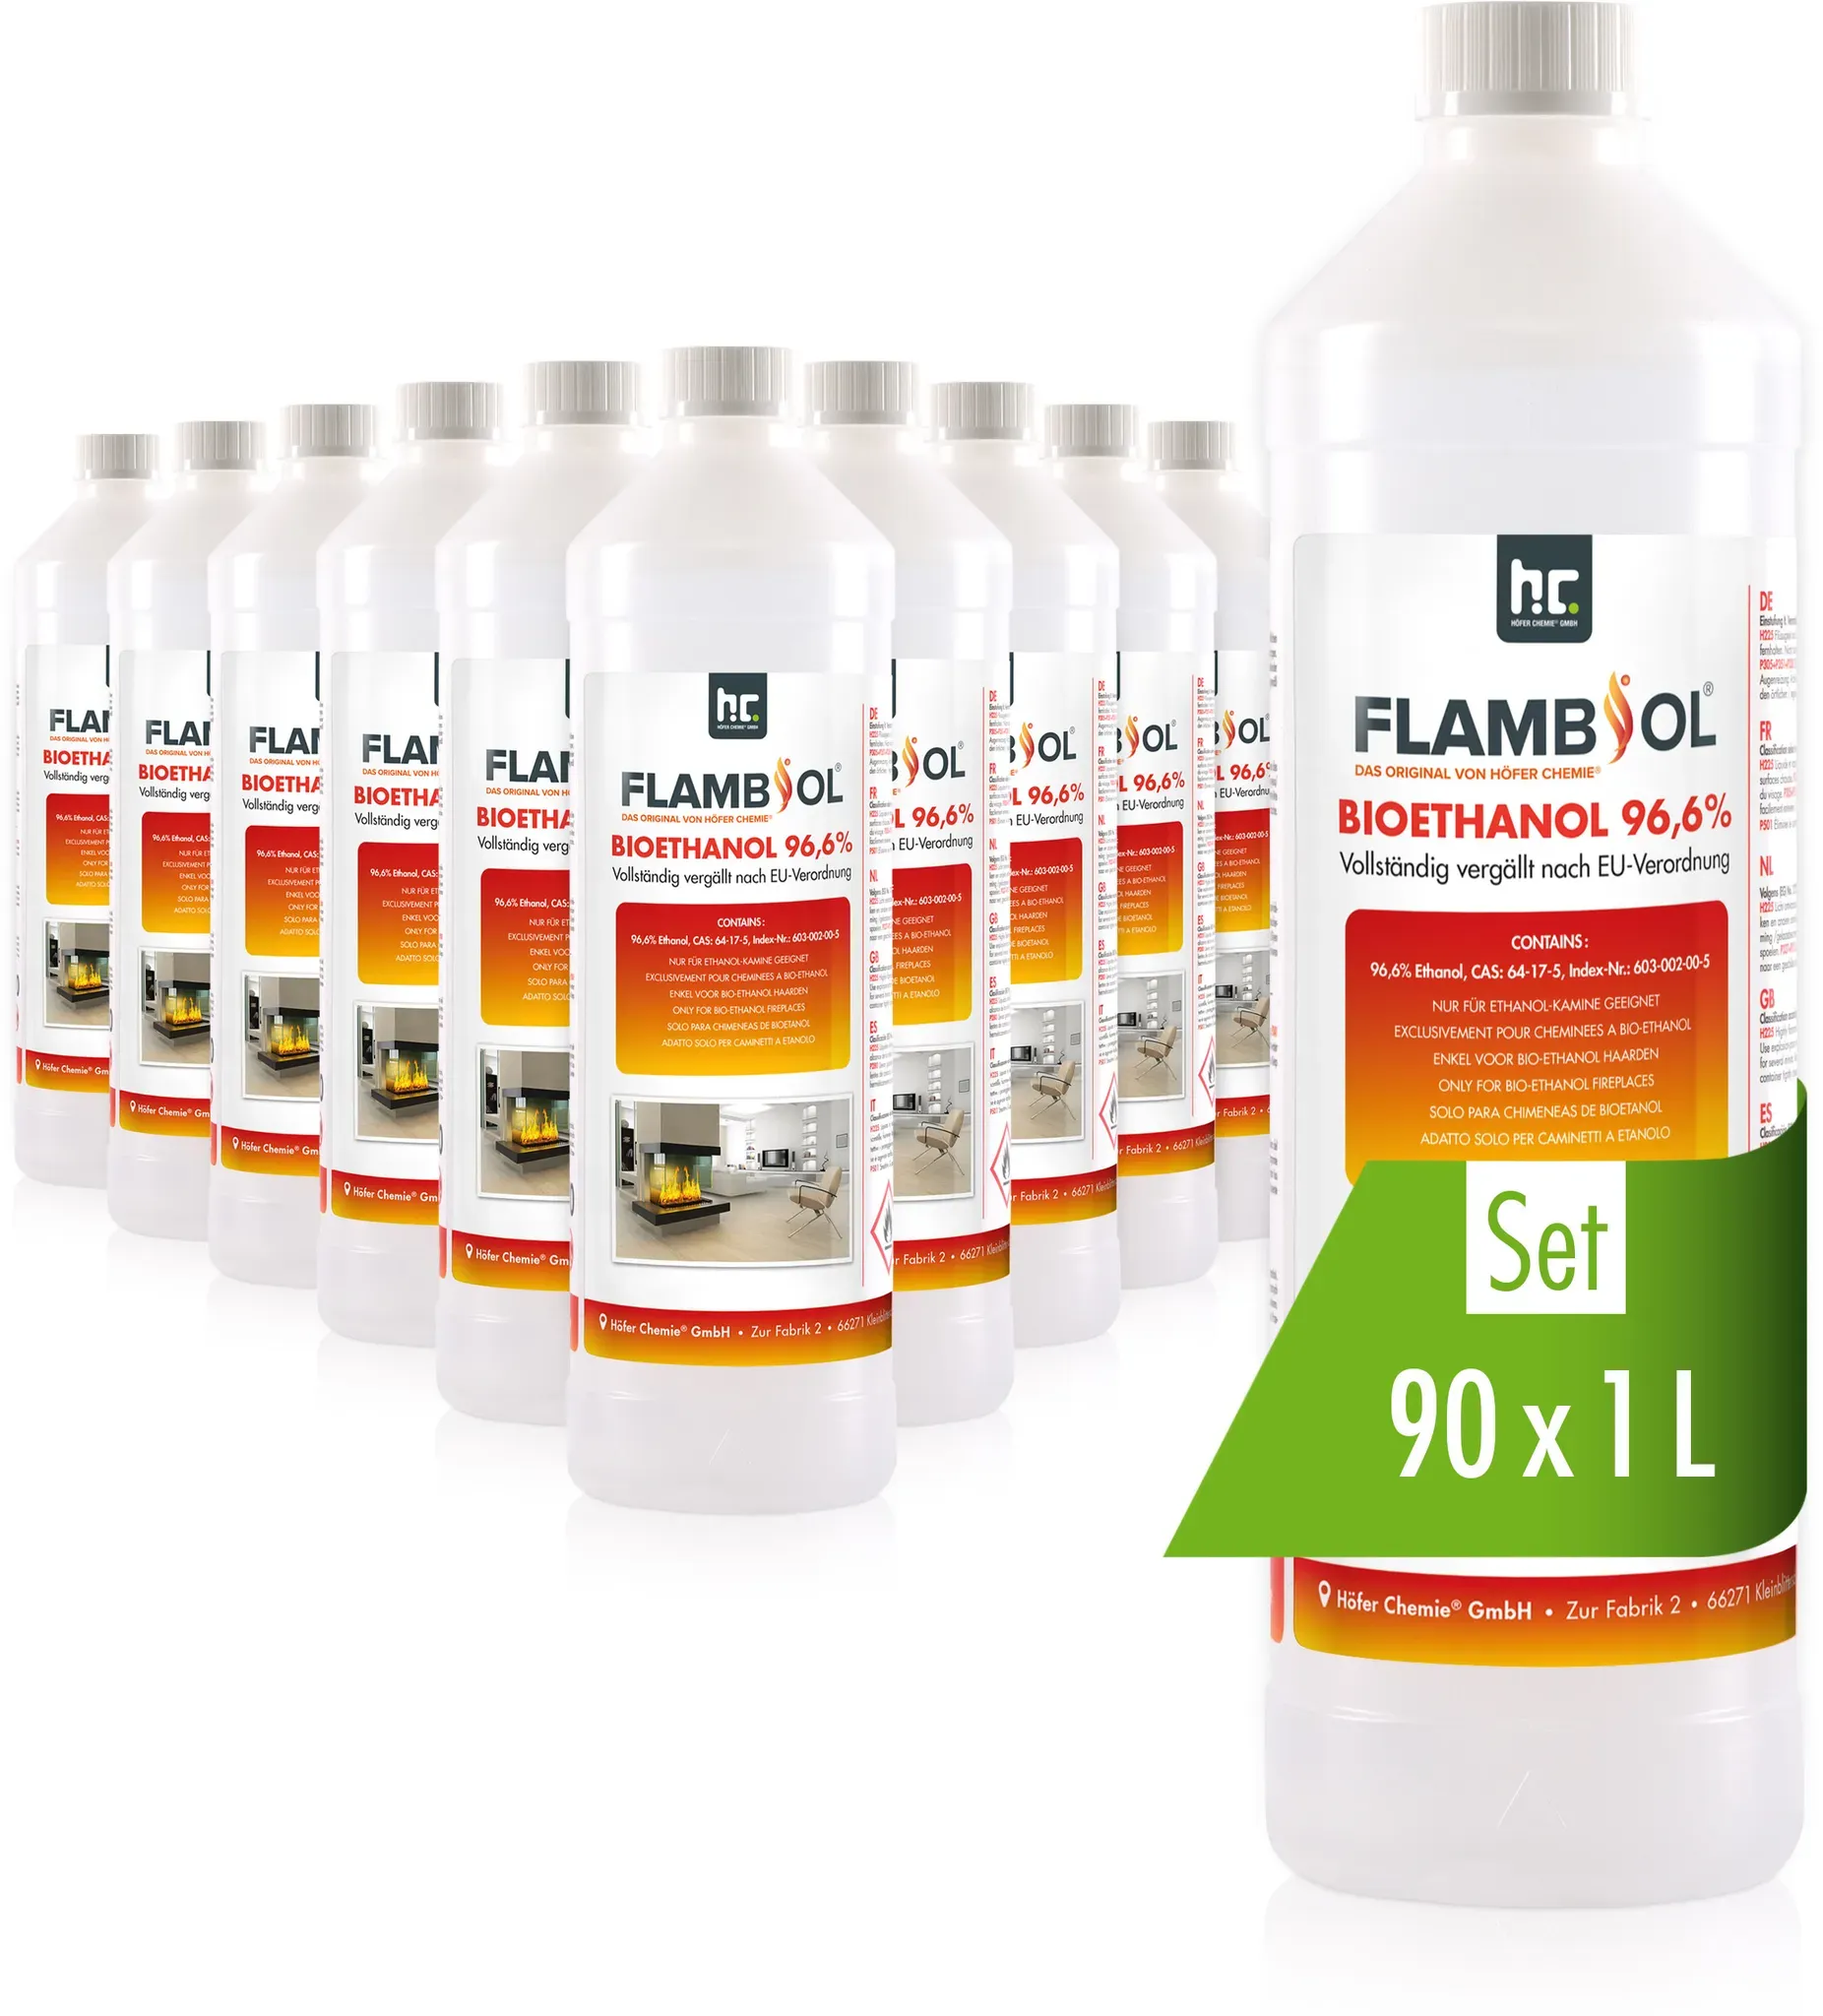 90 x 1 L FLAMBIOL® Bioéthanol 96,6% Premium (en bouteille) pour cheminée de tabl...